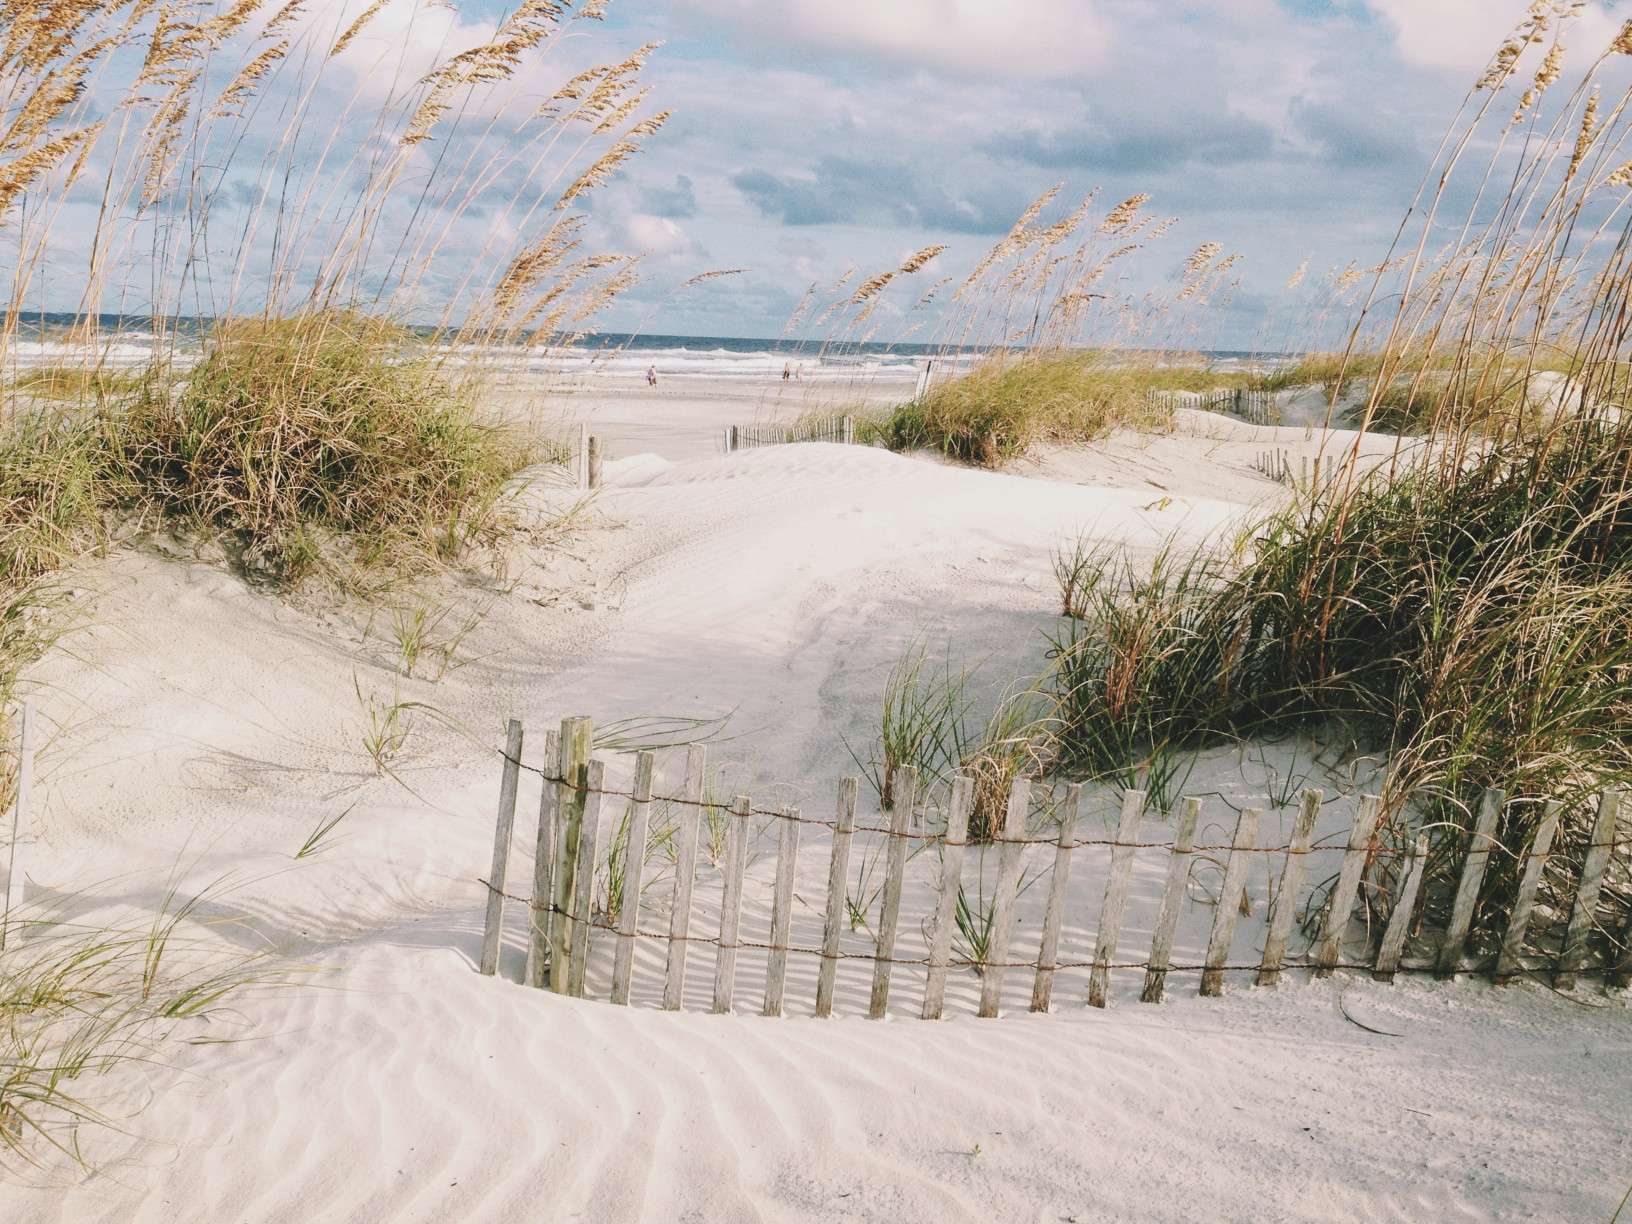 White sandy beach in St. Augustine, Florida